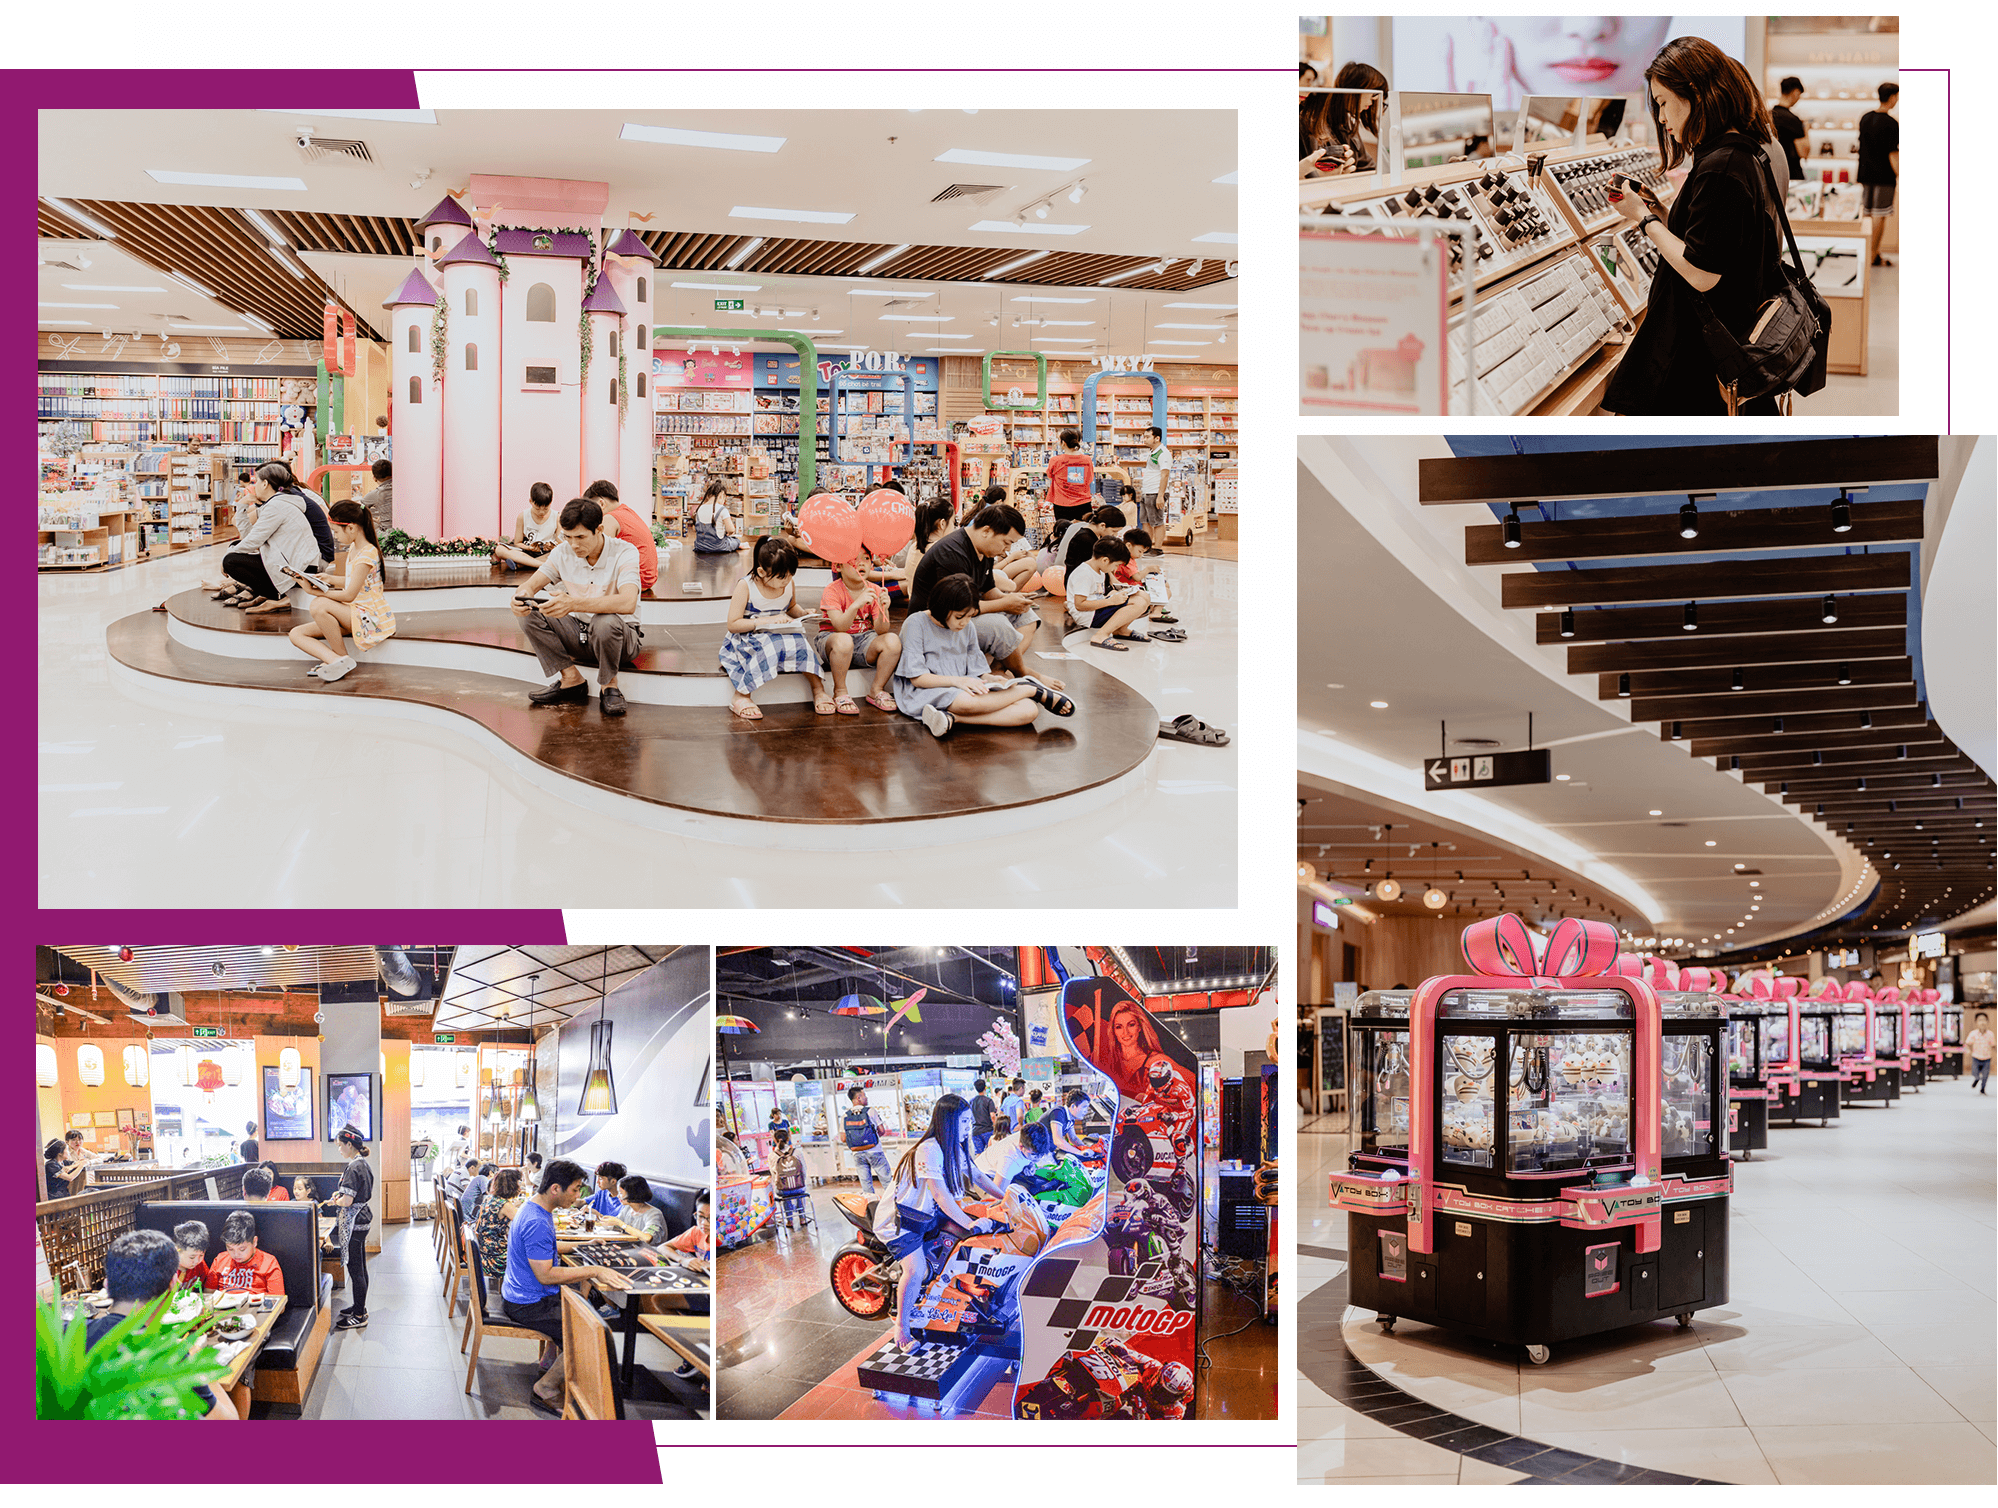 TTTM Aeon Mall mang đến nhiều đổi thay cho khu vực.